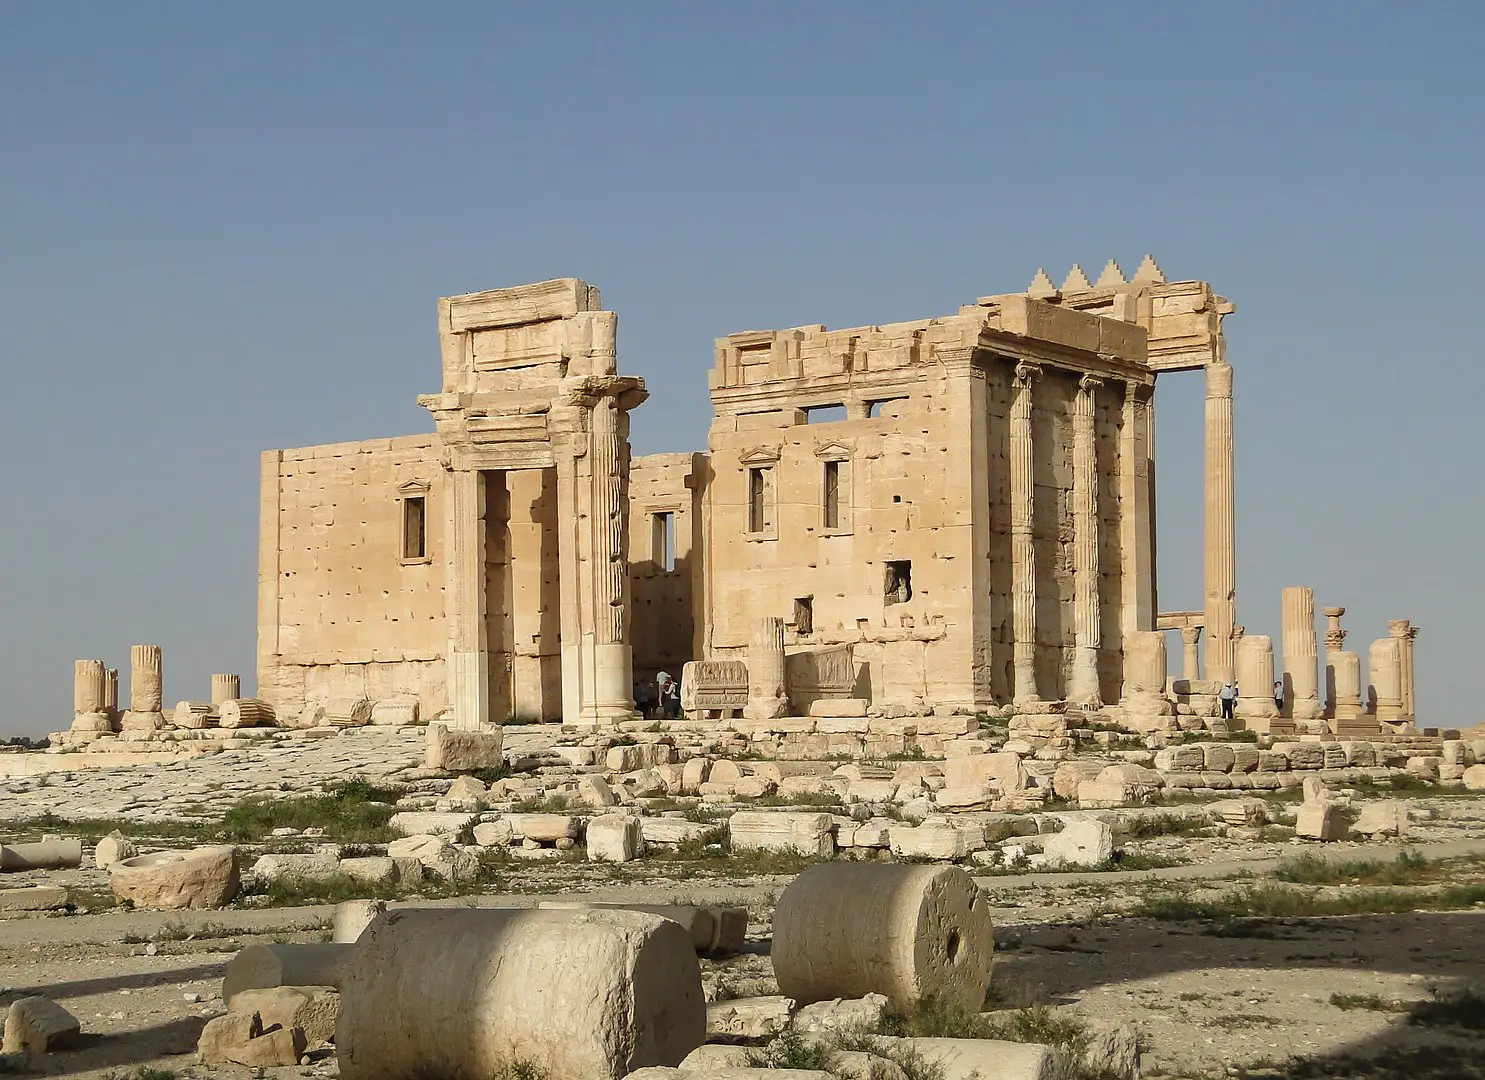 Palmira, la joya grecorromana del desierto sirio -Revista Interesante